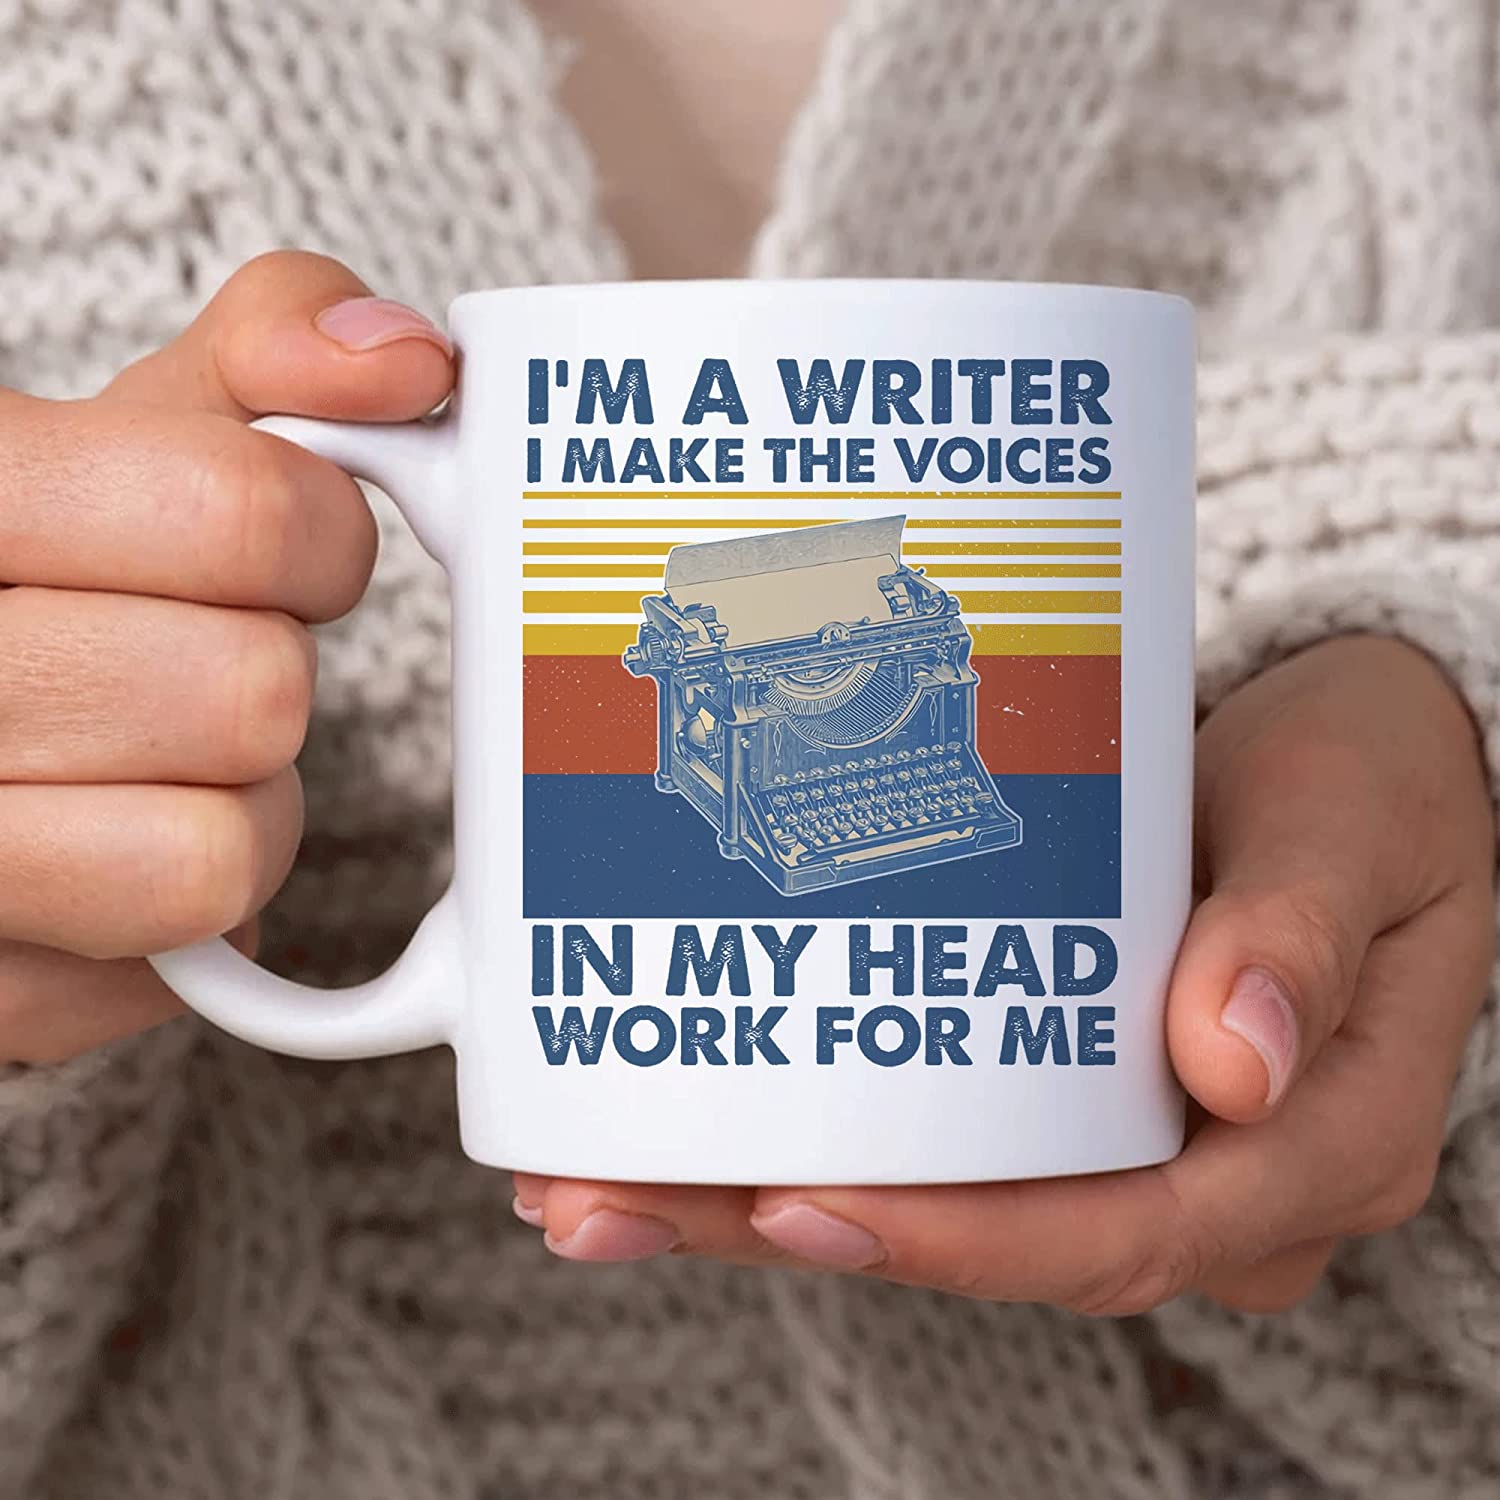 Funny Writer Gifts for Writer Author - Christmas Birthday - Writer I Make Voices Vintage Typewriter 11oz White Ceramic Coffee Tea Mug for Men Women